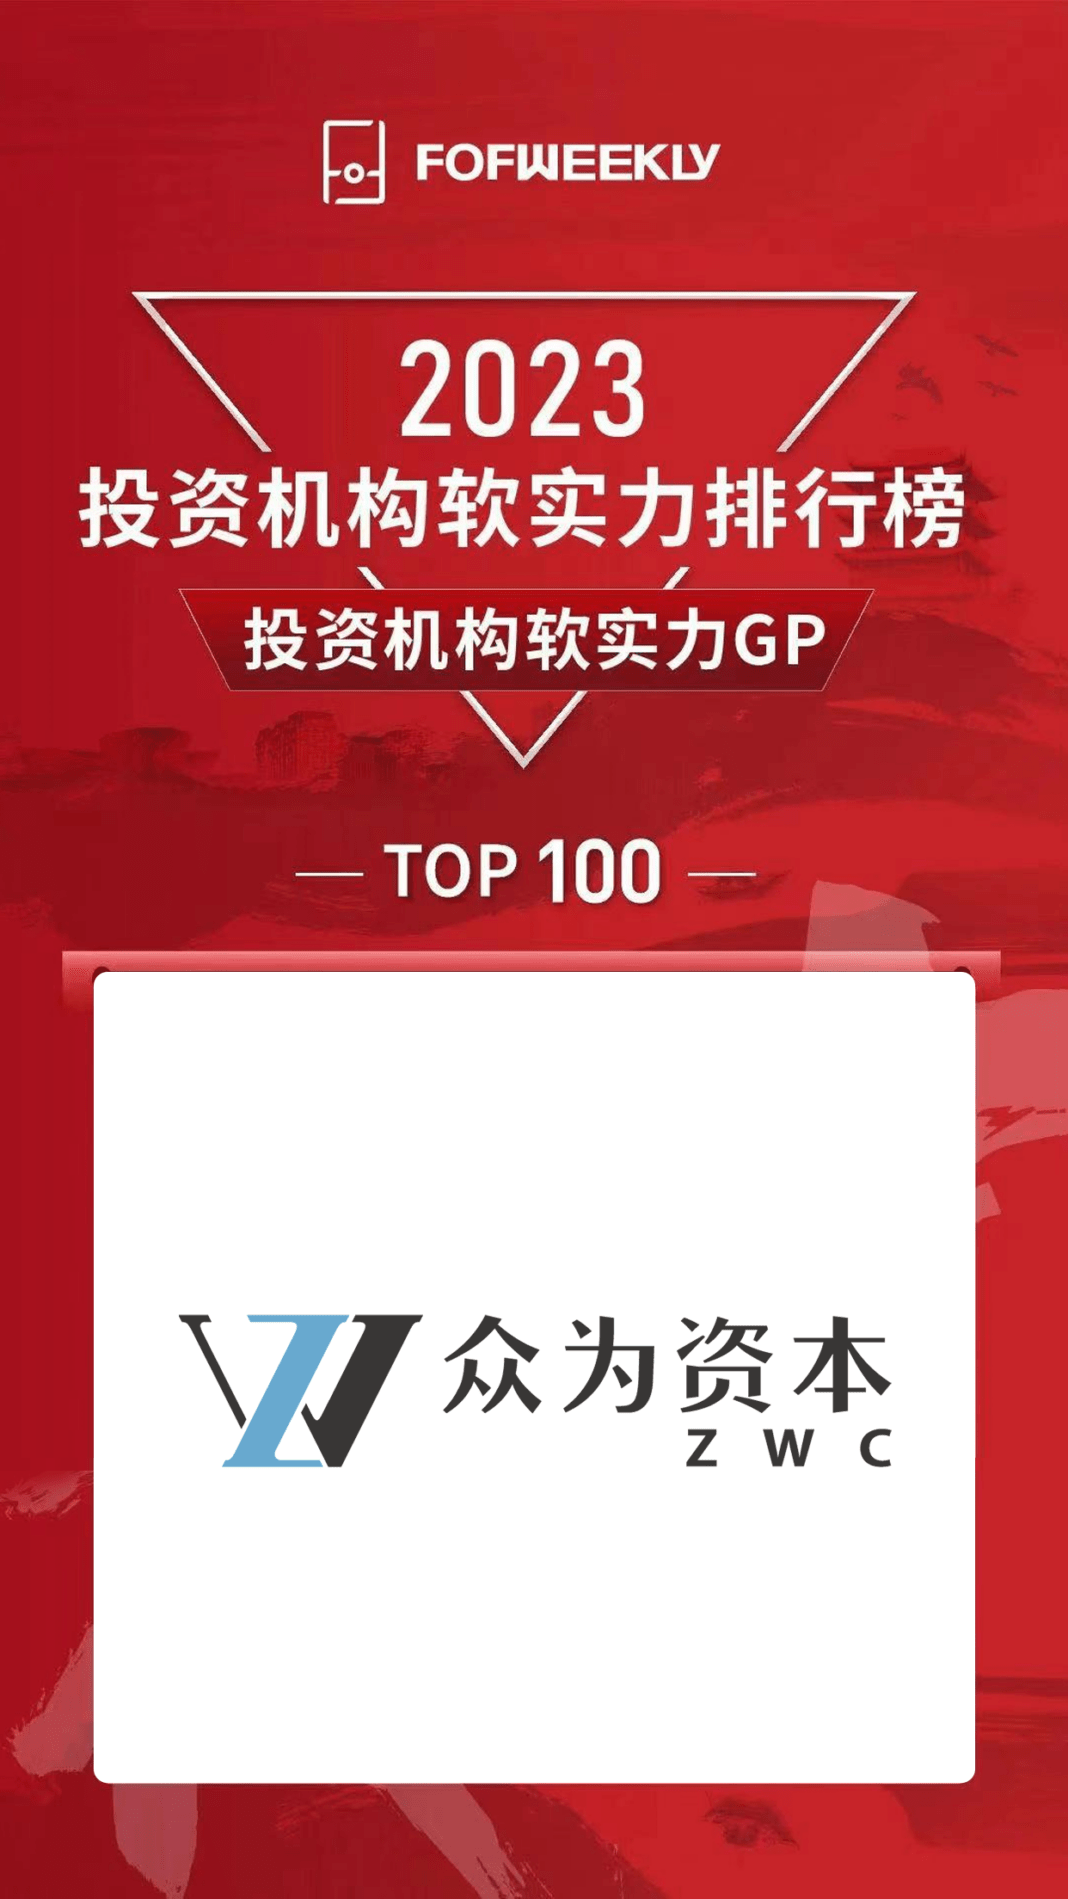 張永漢創辦的眾為資本，獲該排行榜評為「2023投資機構軟實力GP排行榜Top100」。